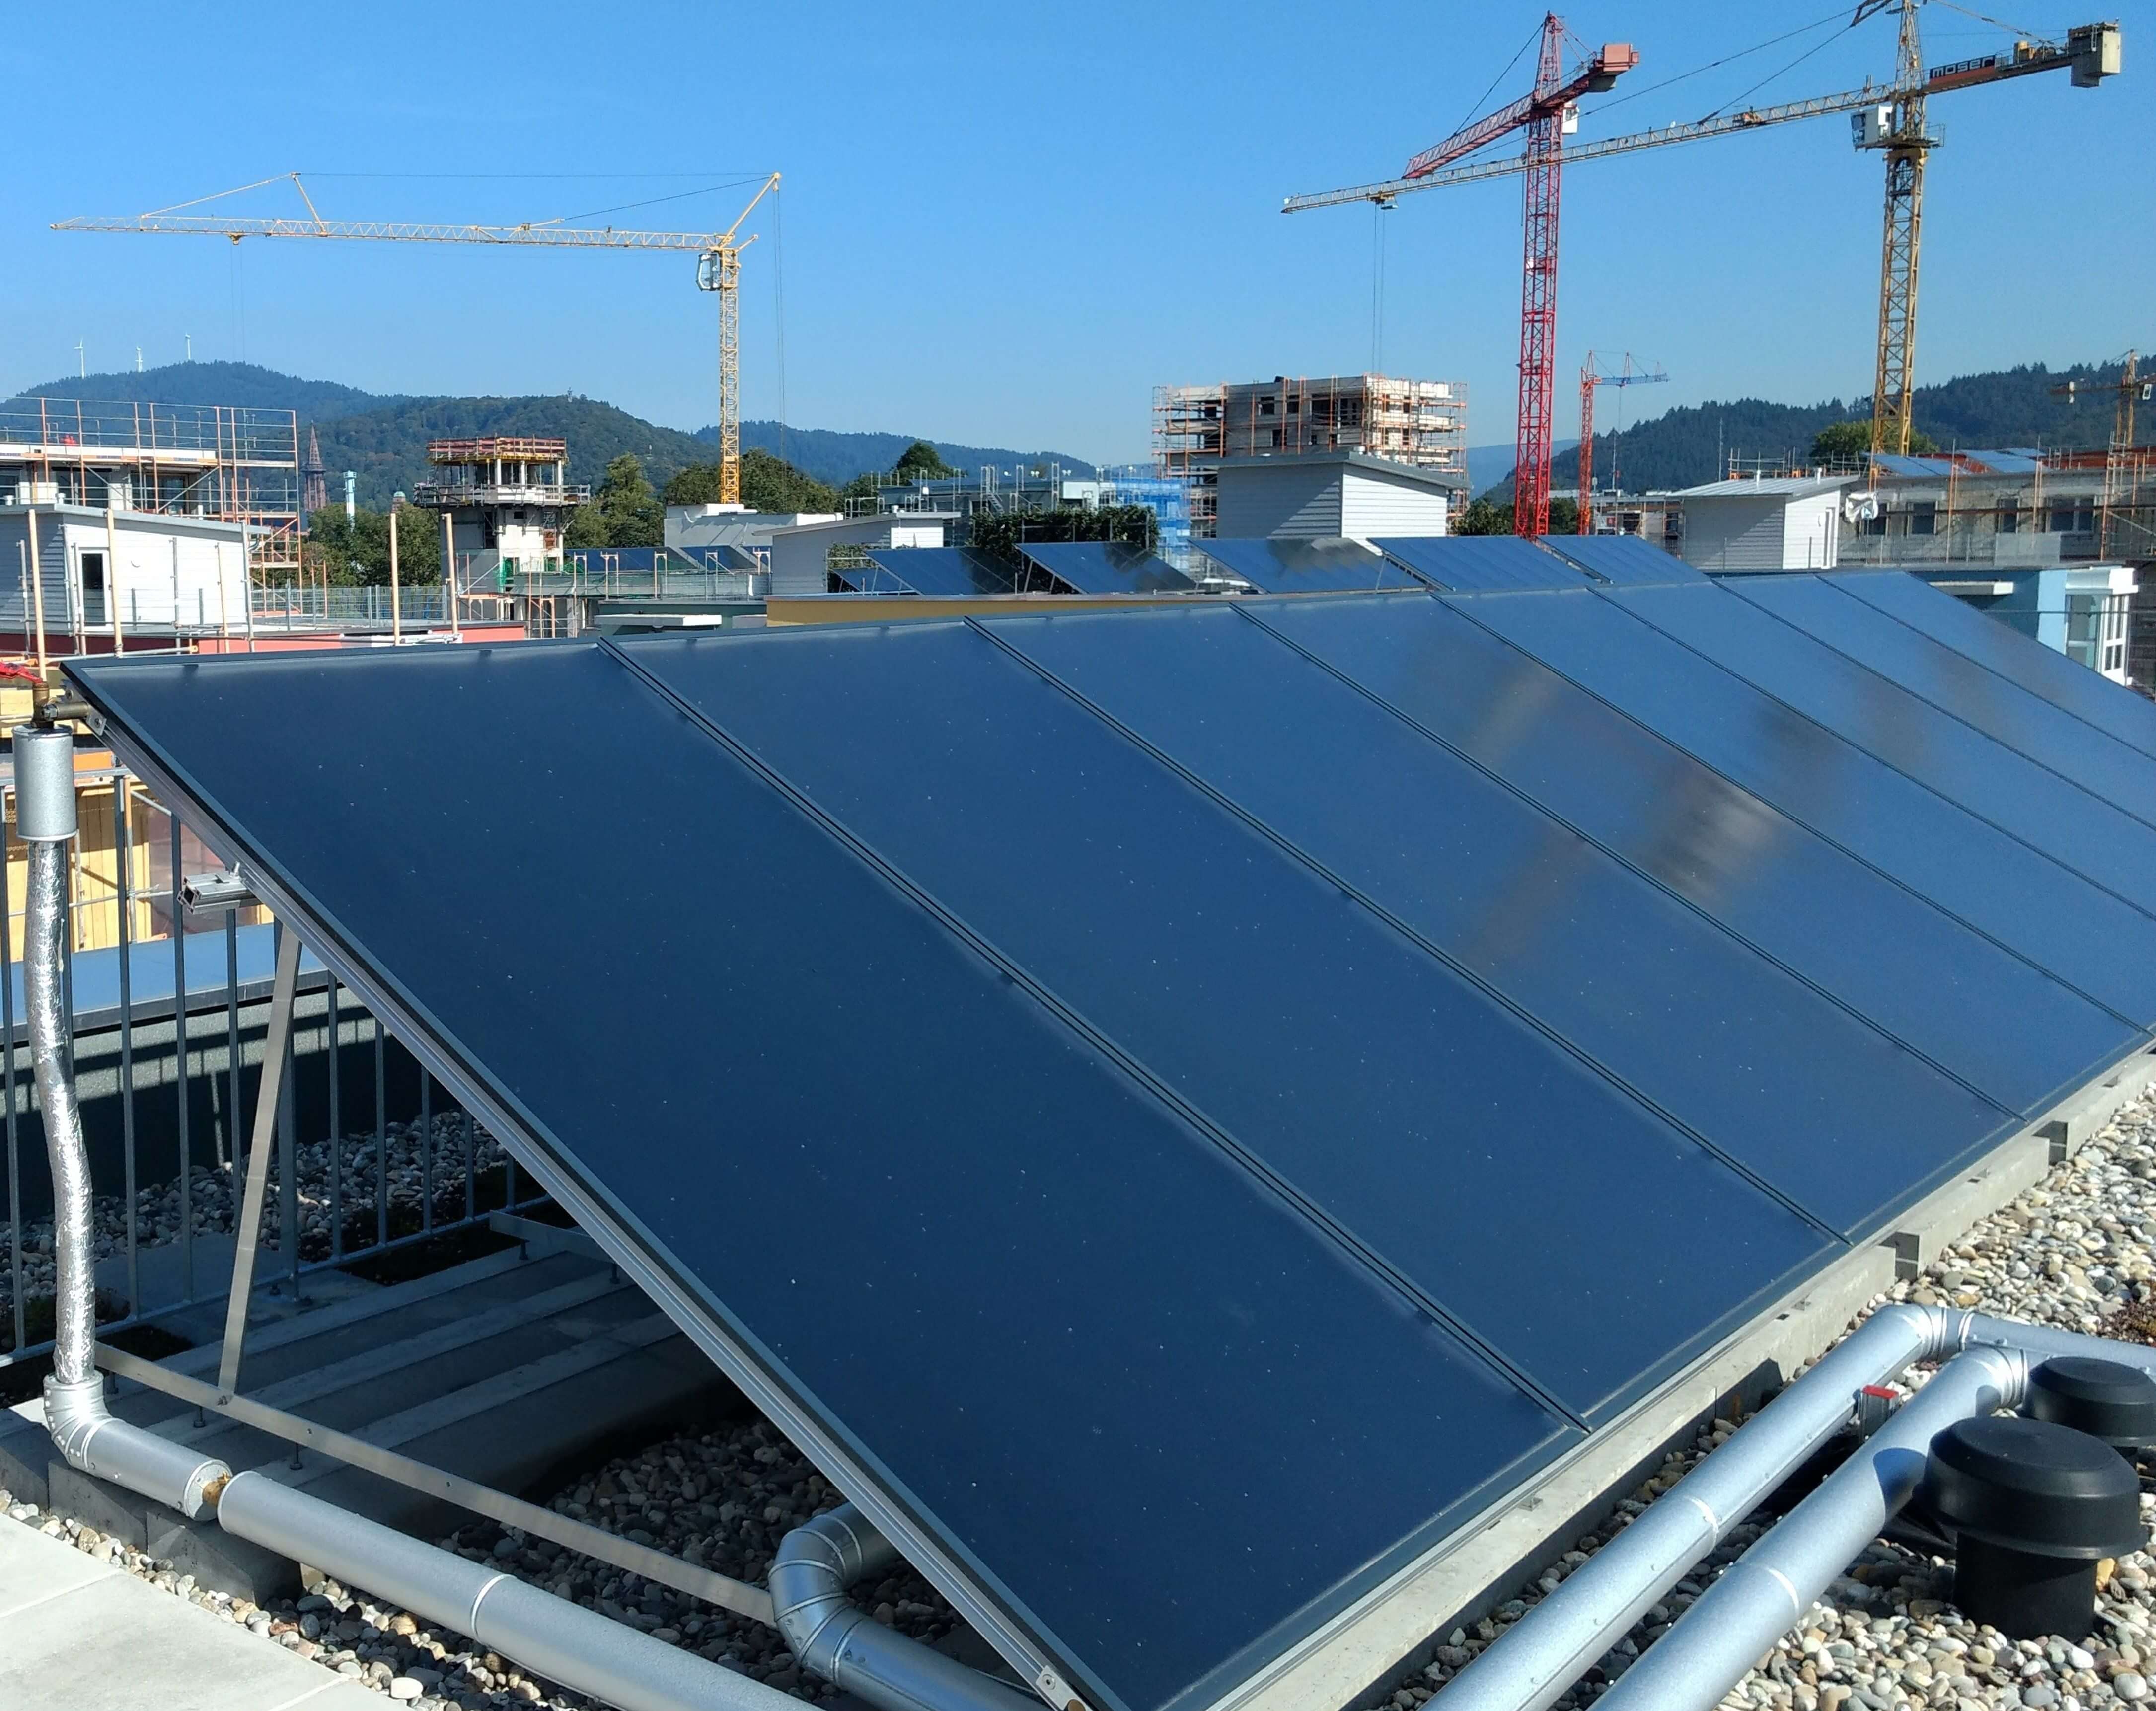 Reihe mit thermischen Solarkollektoren auf einem Flachdach im Baugebiet Freiburg-Gutleutmatten